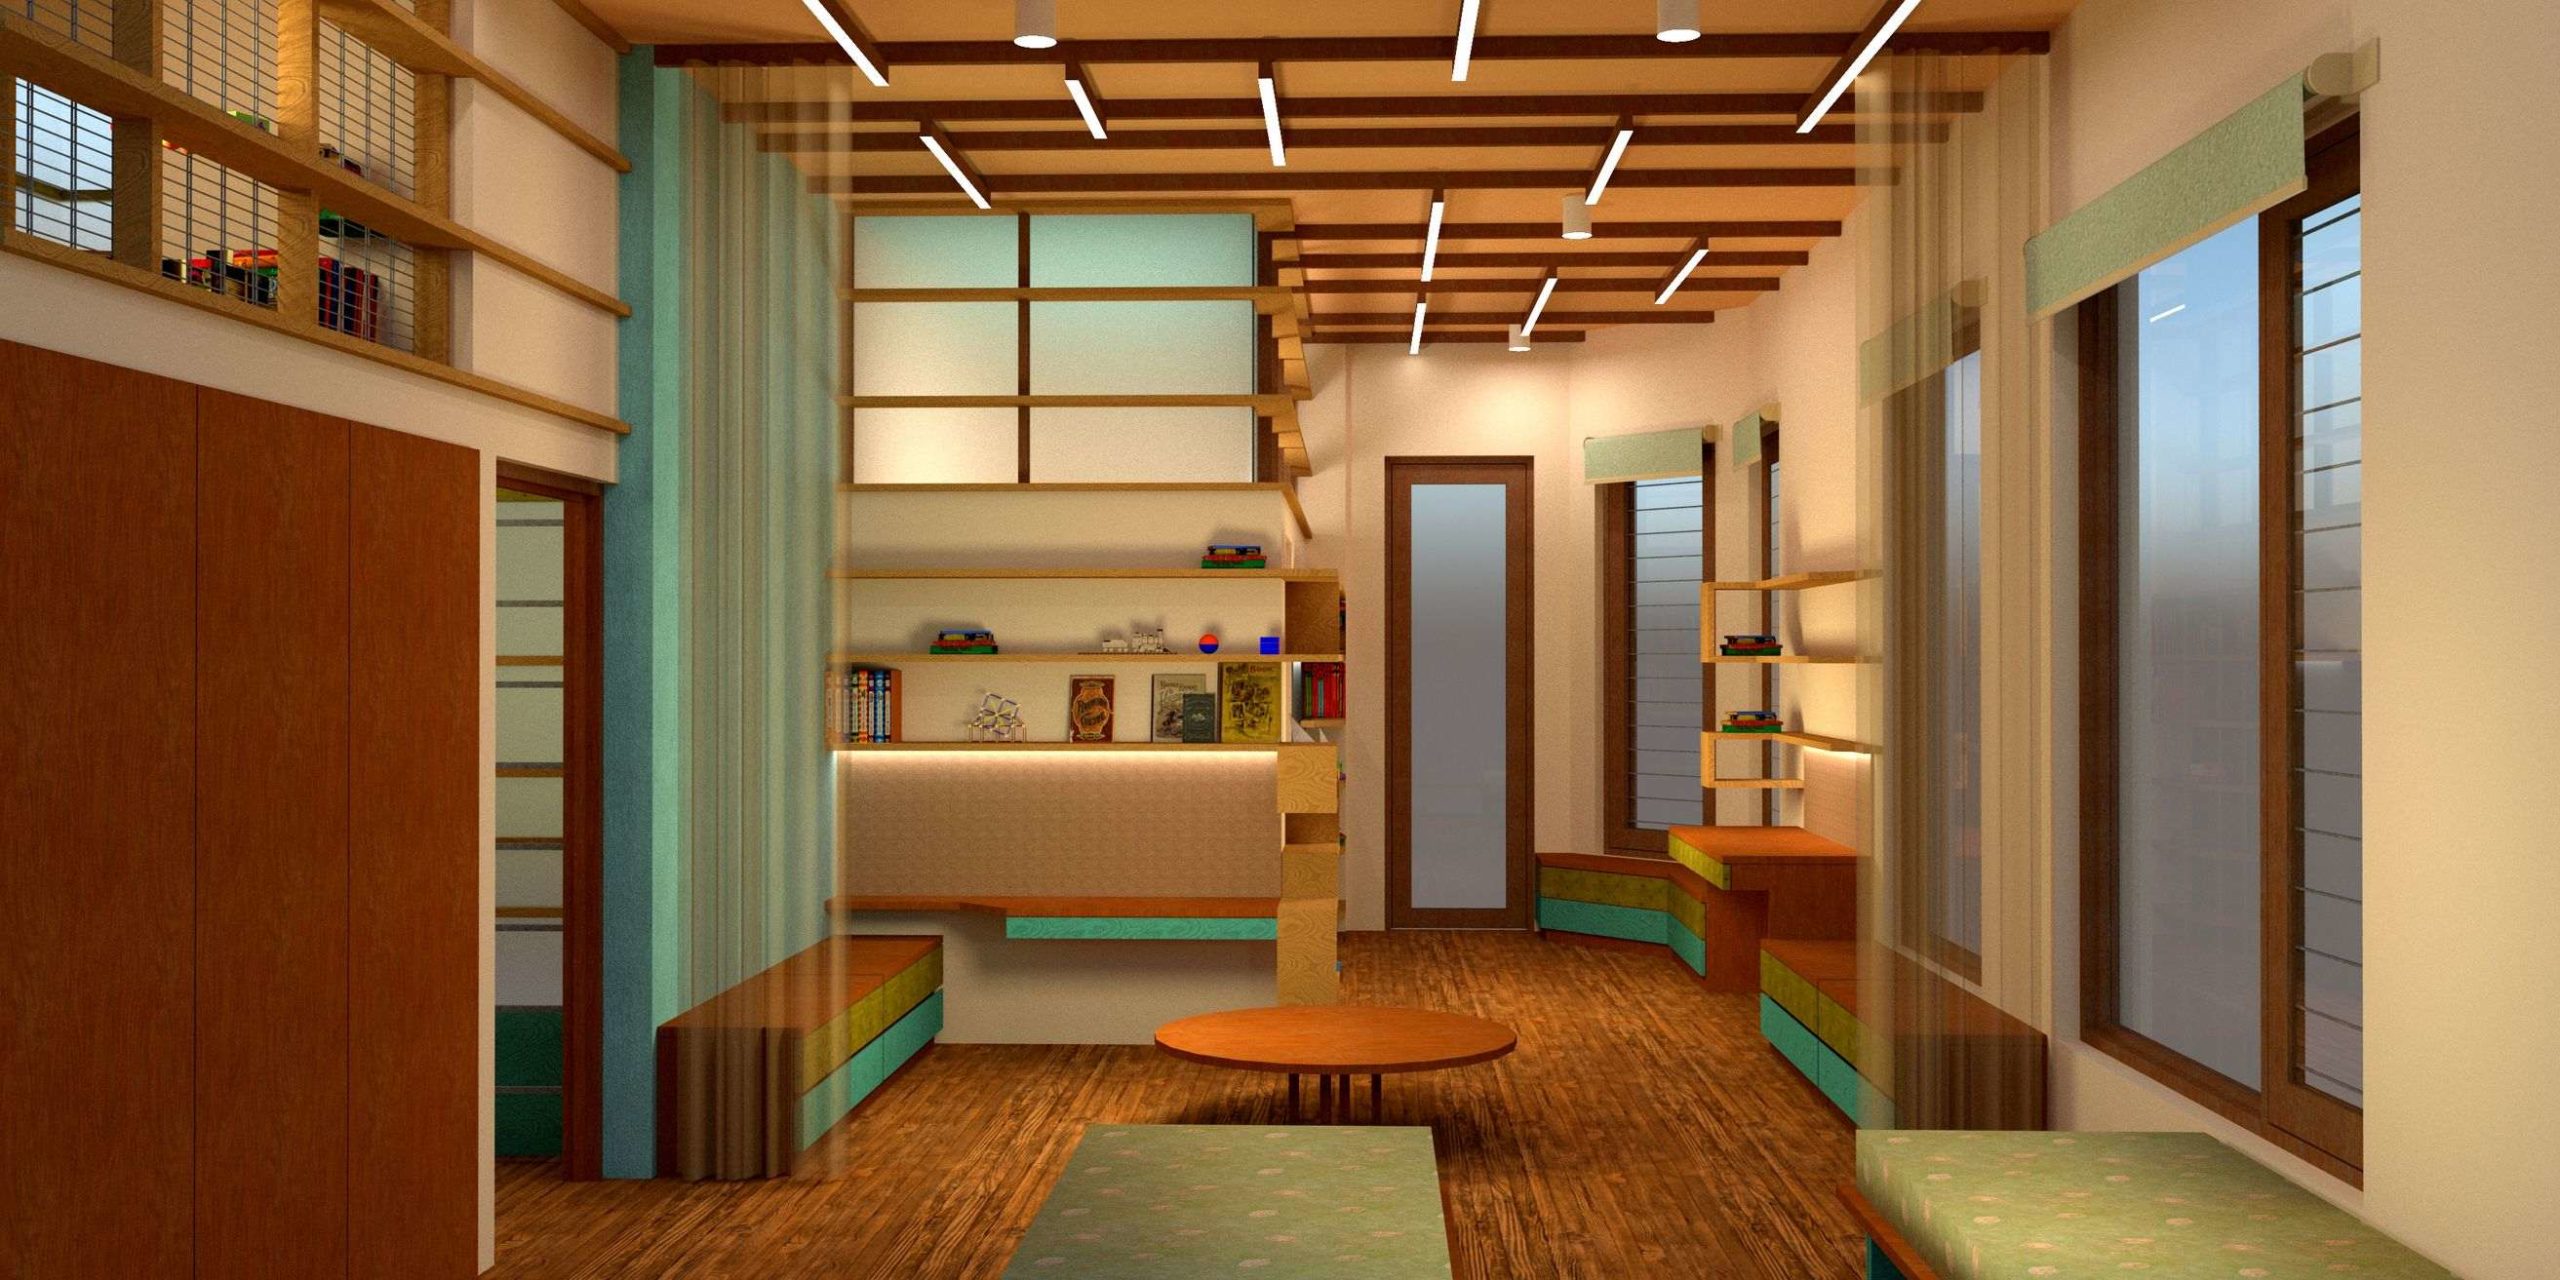 interior design india, interiors delhi, children's room interior, furniture design, ceiling design